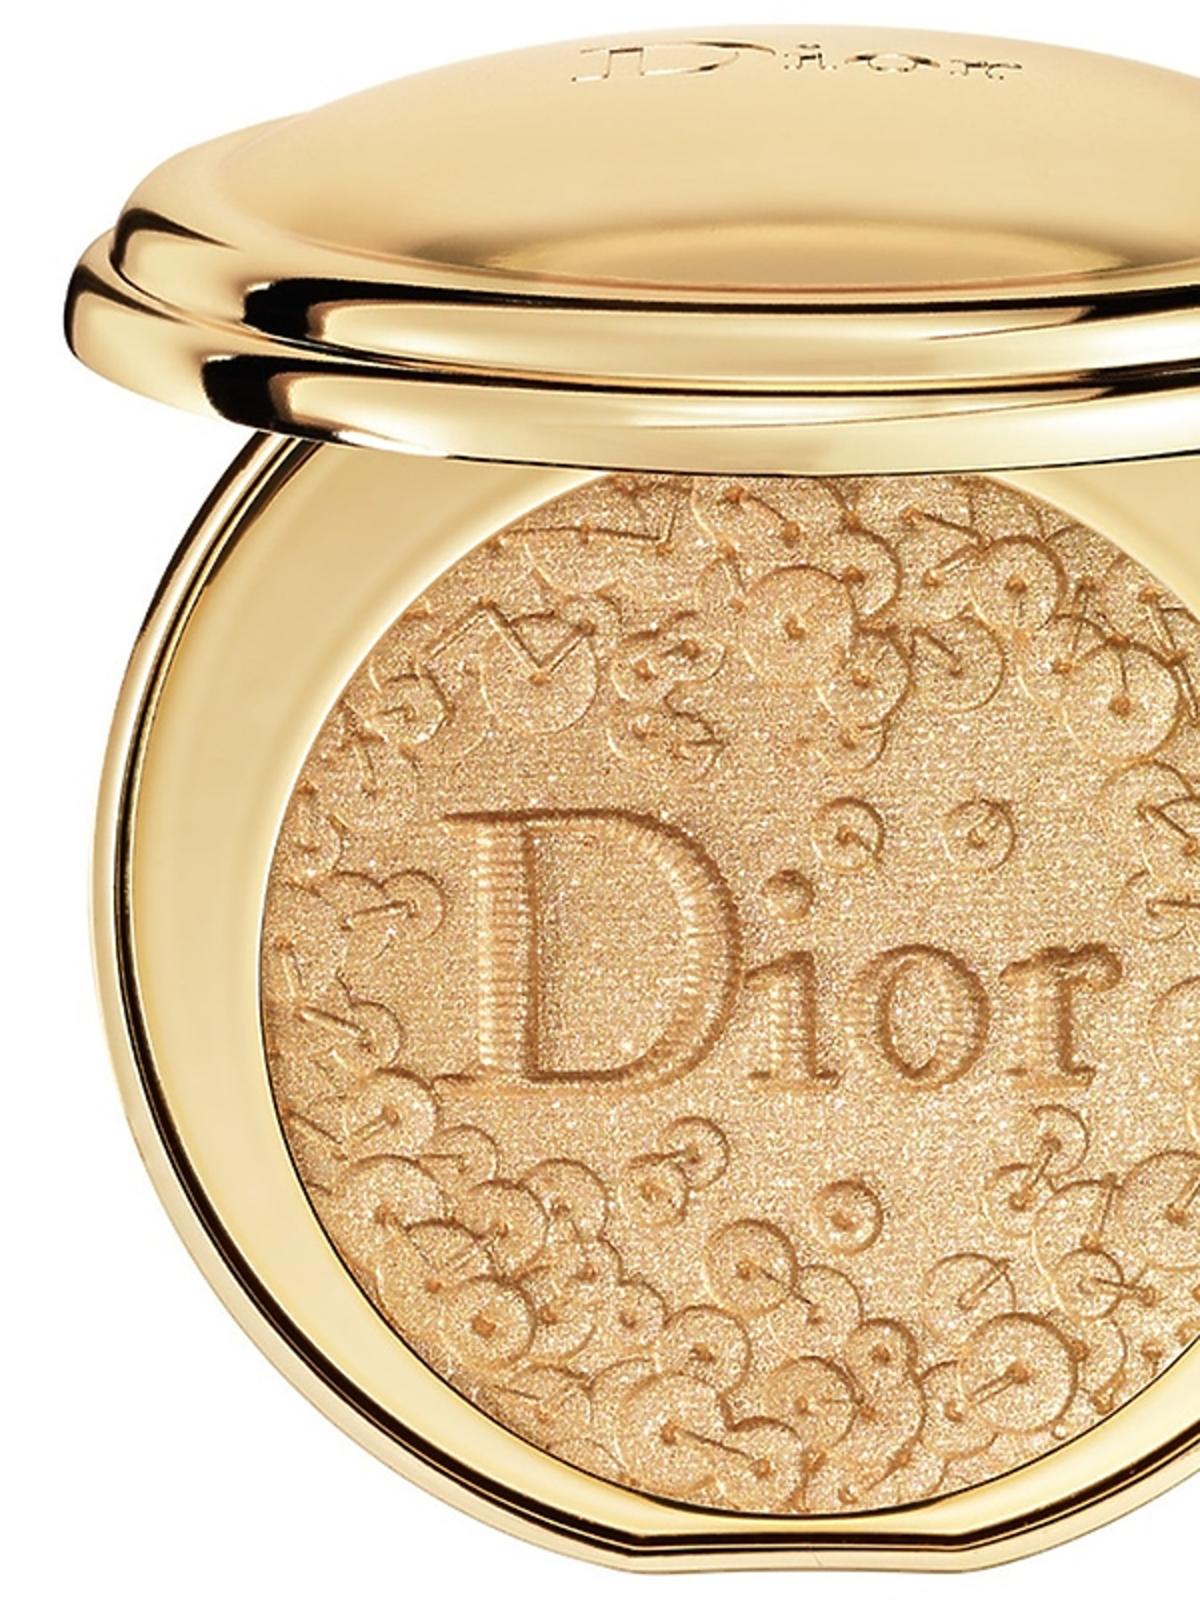 Puder rozświetaljący, Dior, 315,00 zł